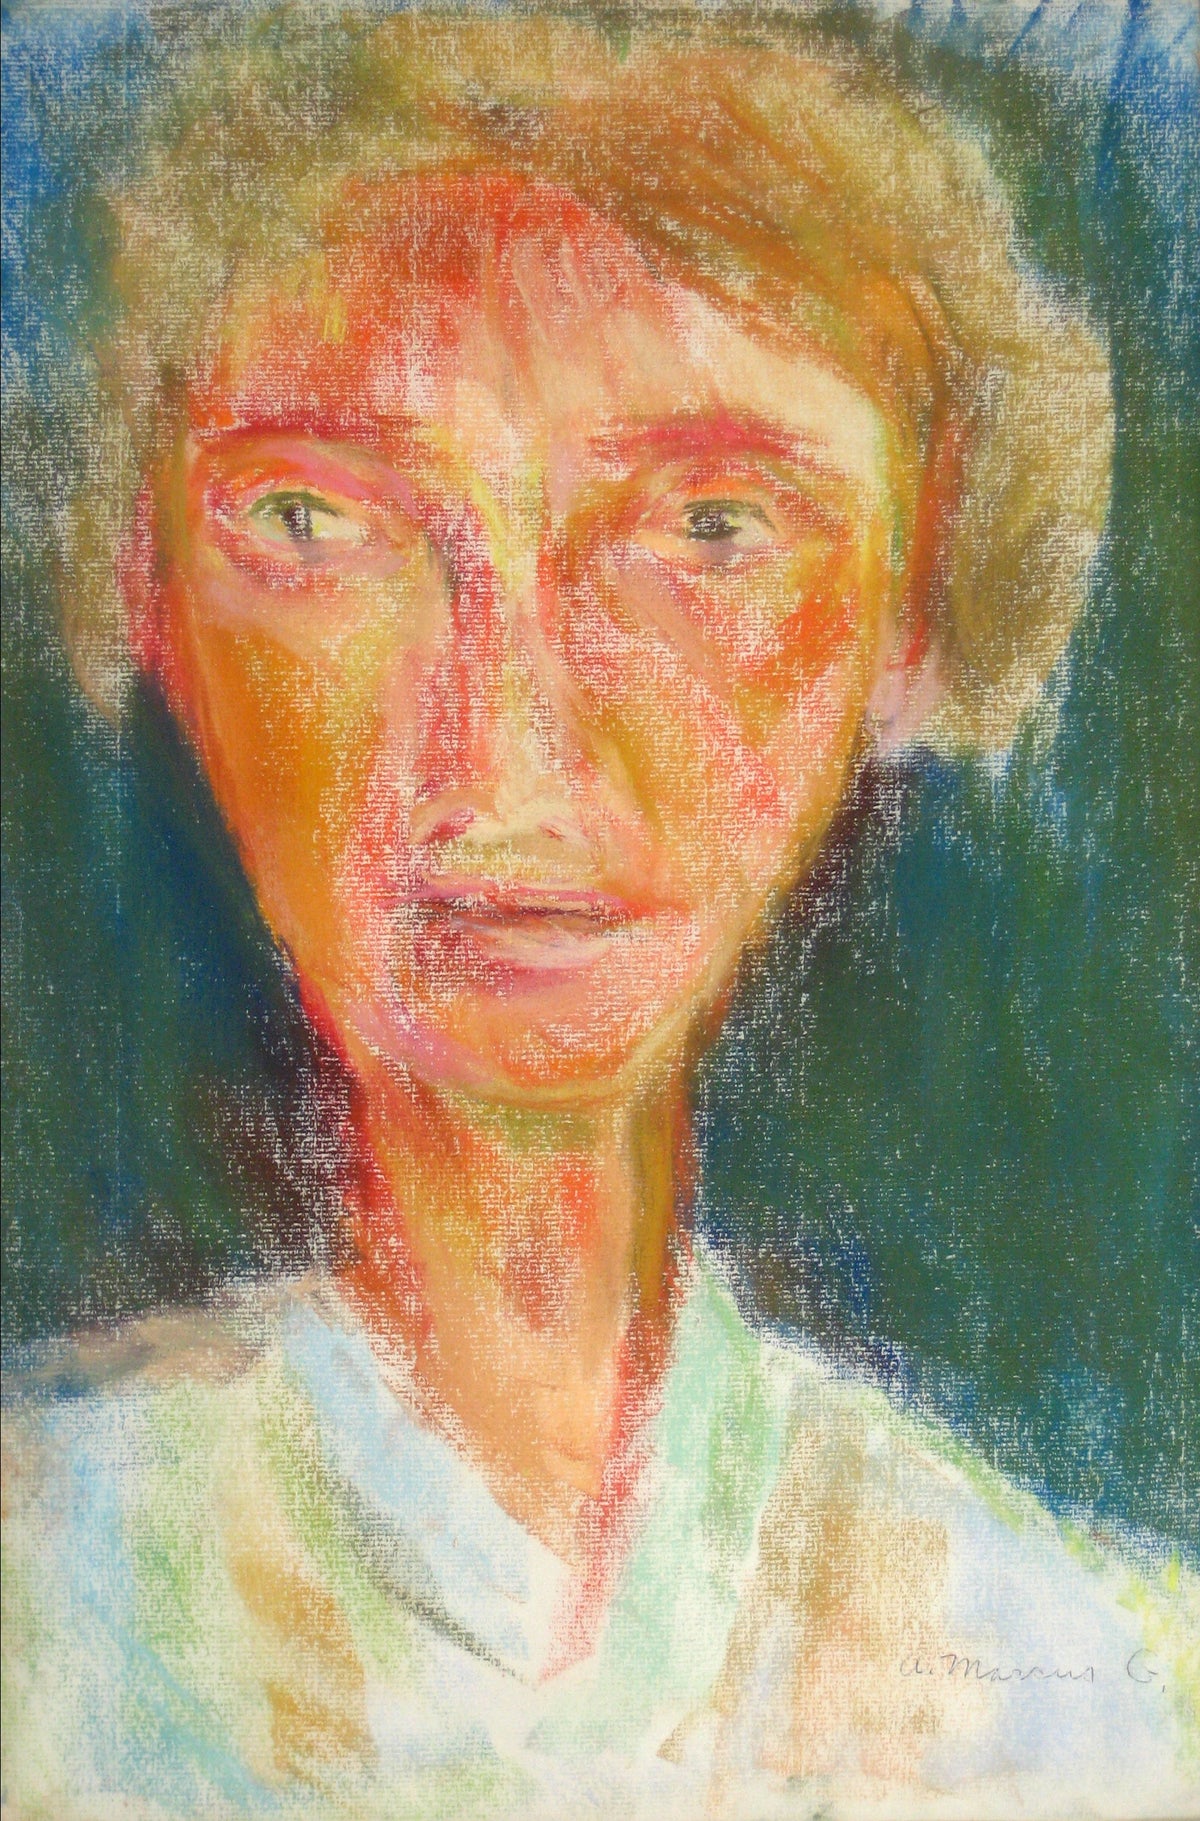 &lt;i&gt;Self Portrait No. 6&lt;/i&gt;&lt;br&gt;1960s Pastel&lt;br&gt;&lt;br&gt;#15277